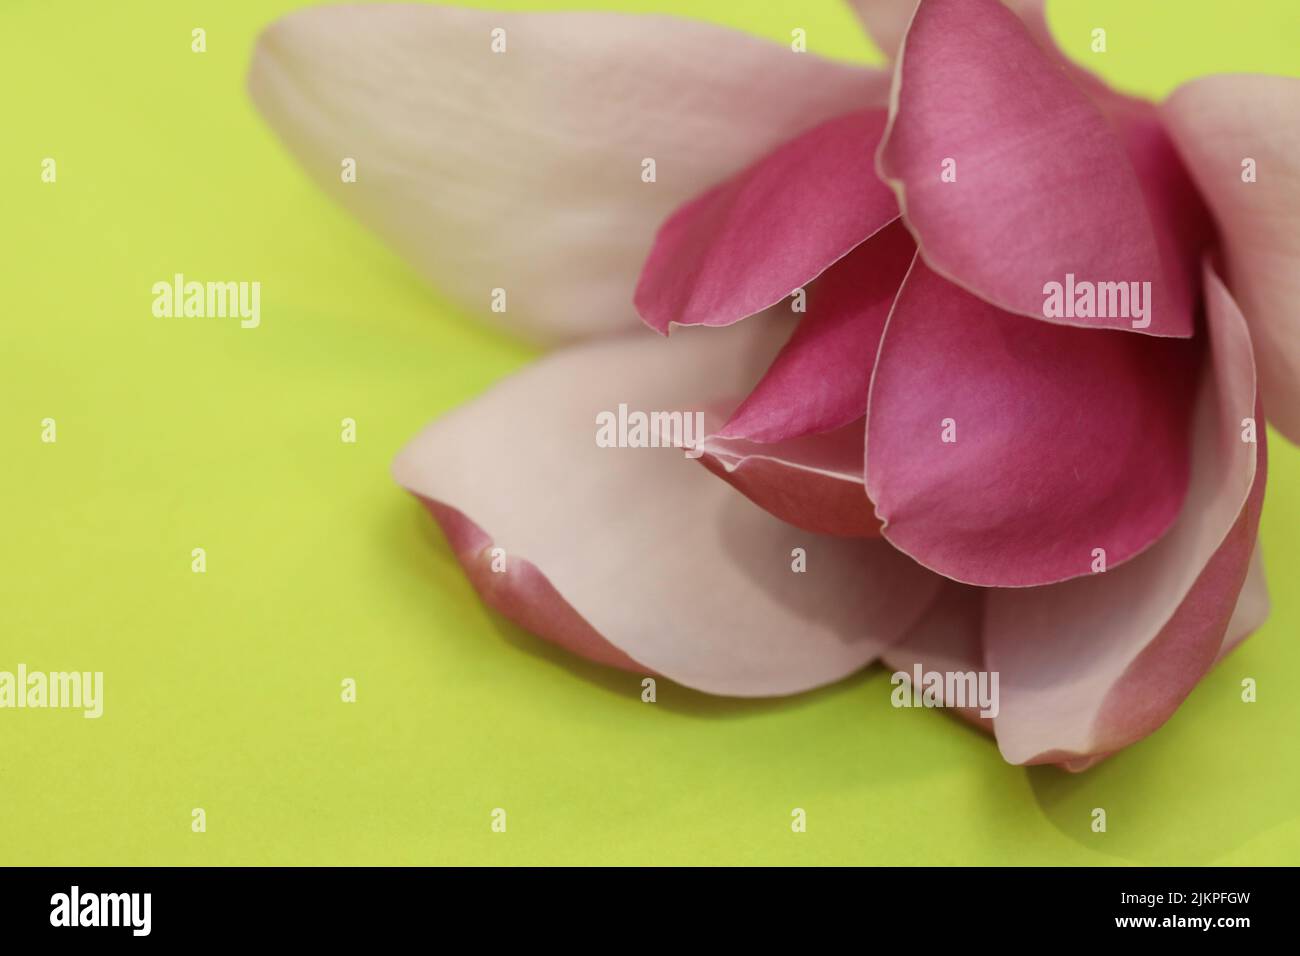 Un hermoso tropical que mira delicado rosa perfecto Magnolia flor y pétalos sobre un brillante fondo amarillo intenso verde Foto de stock